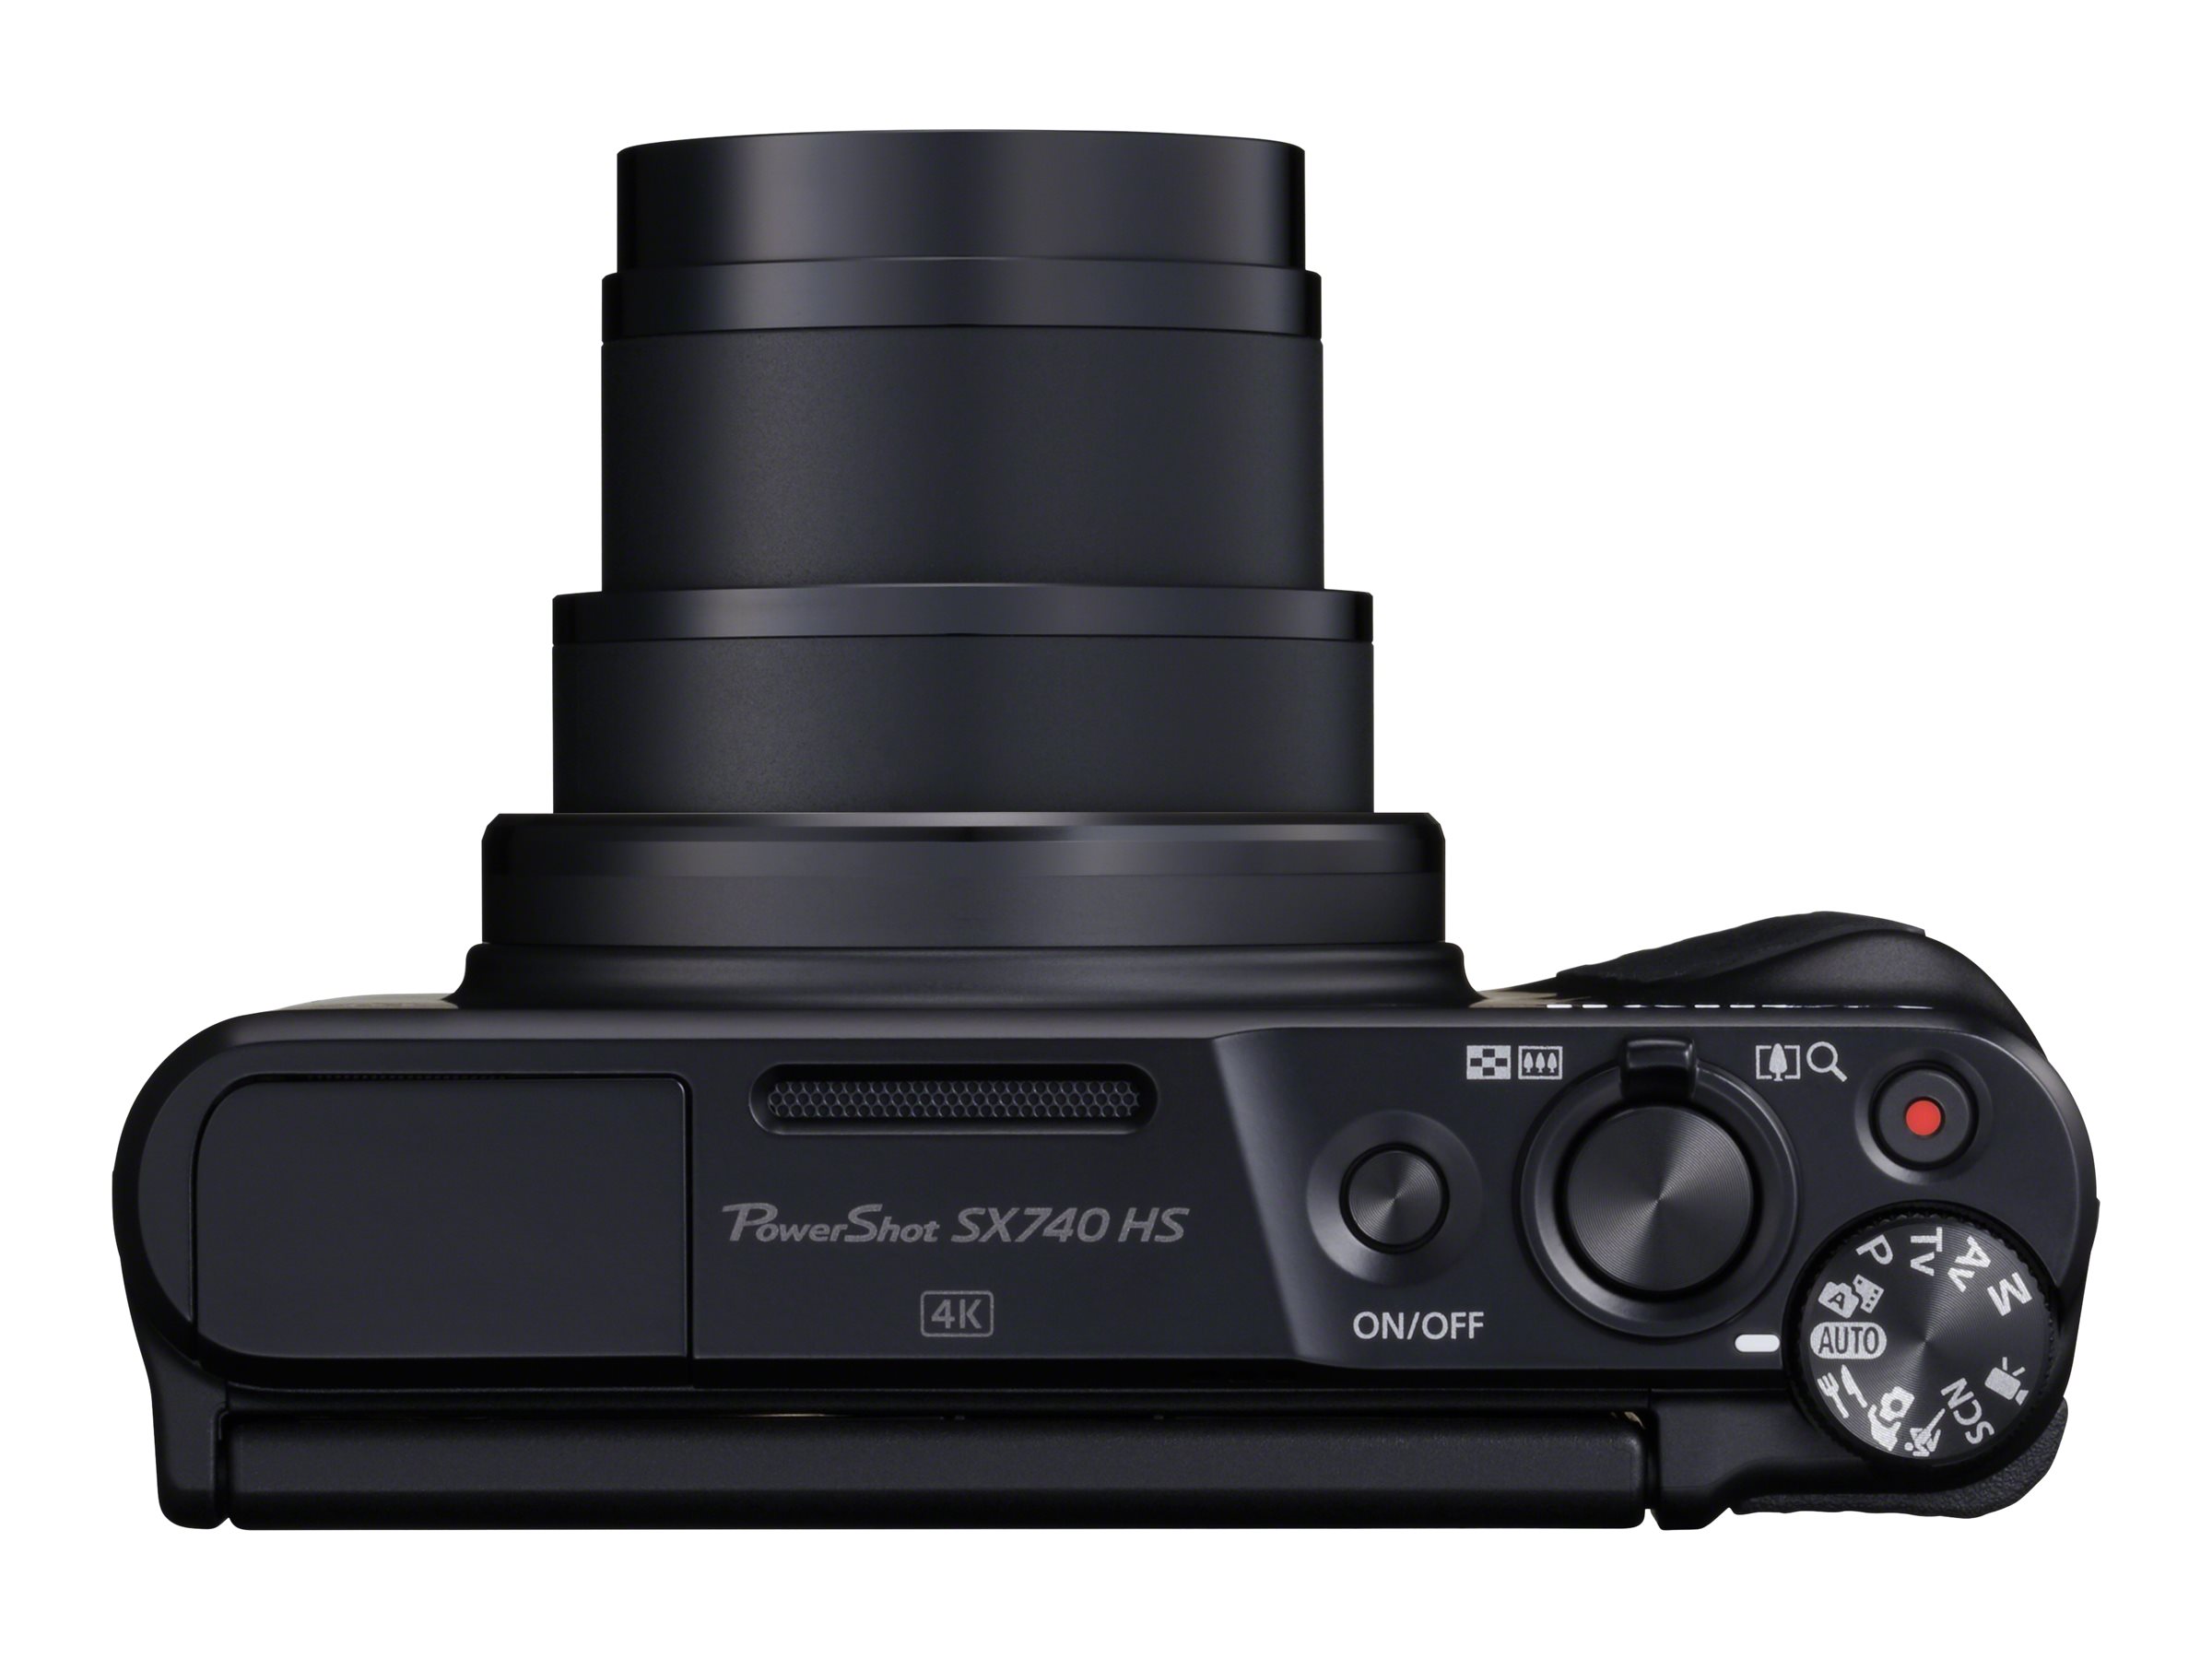 Canon Powershot SX740 HS with Case - Black - 2955C013